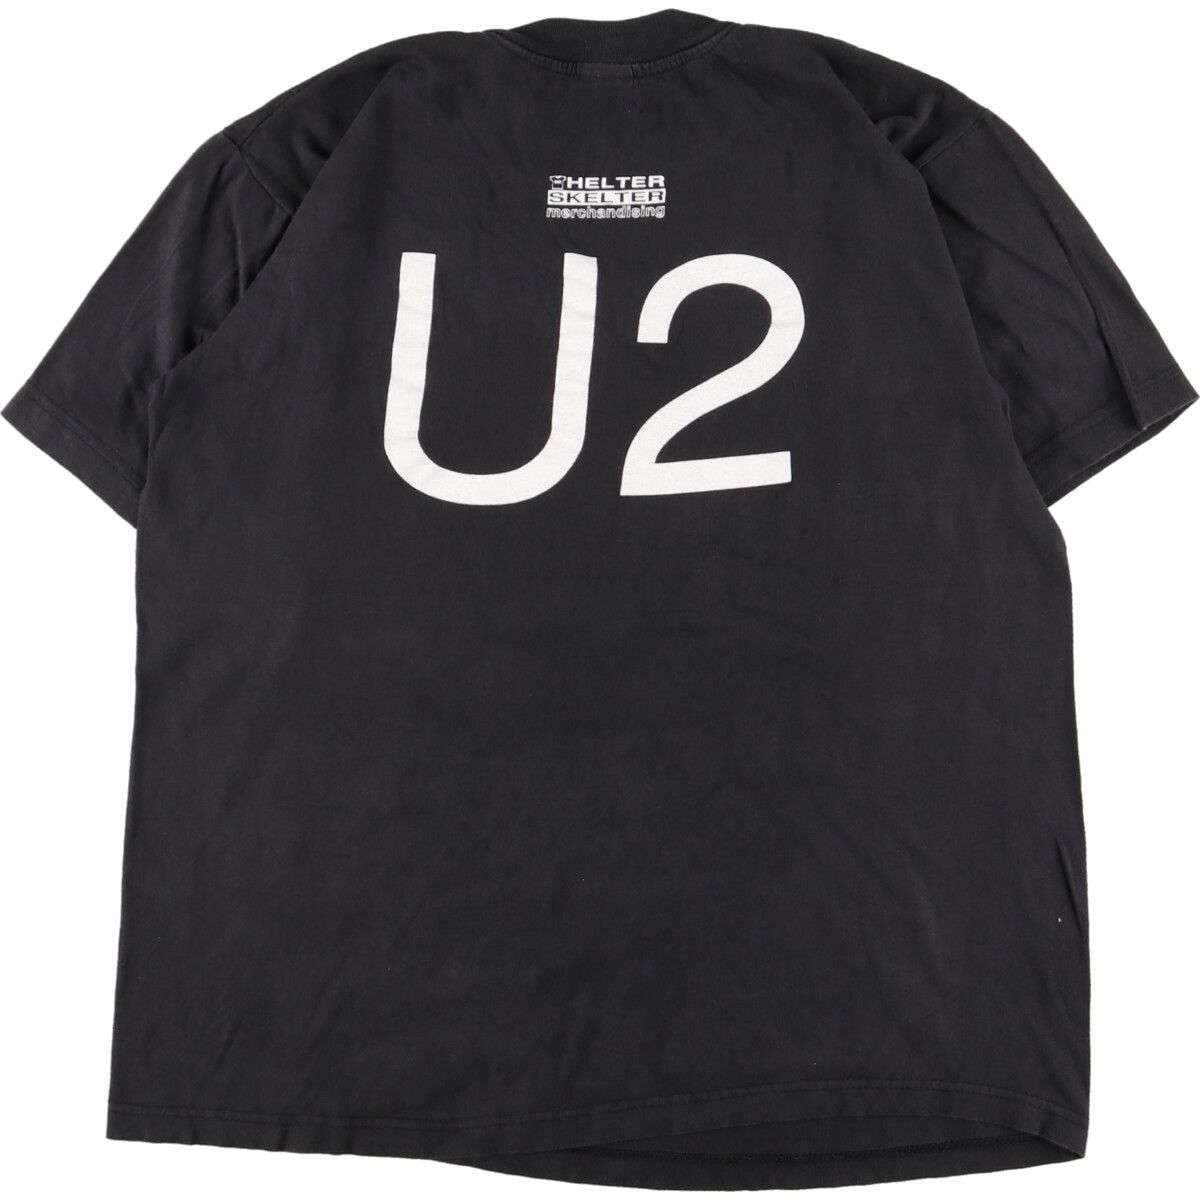 U2 ユーツー バンドTシャツ バンT USED 古着 L - トップス